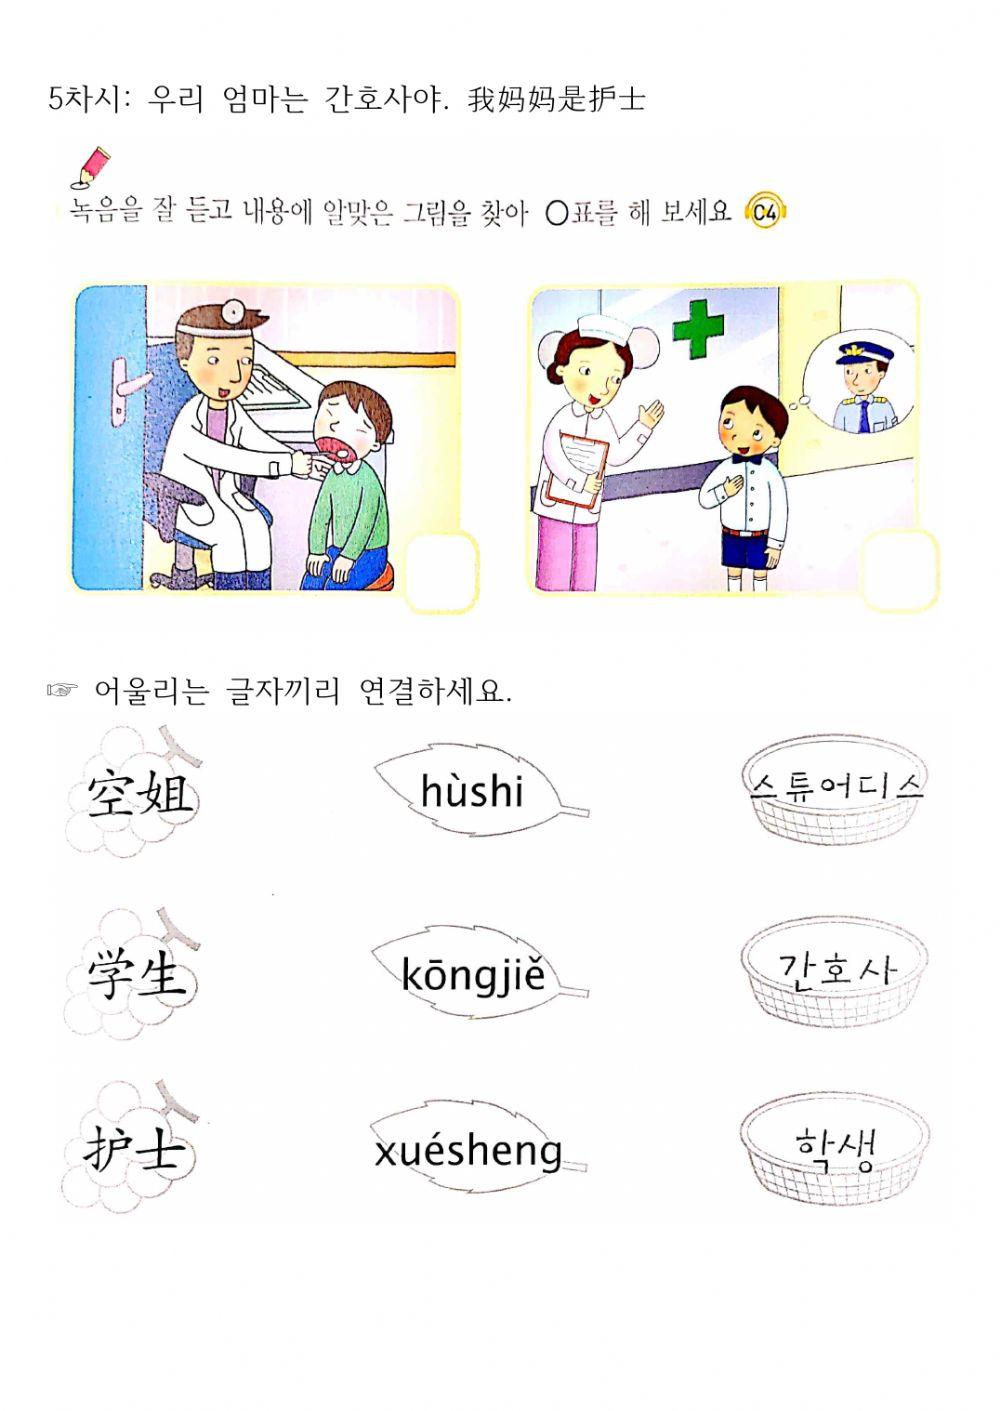 Jrc junir book2-3 (Korean-Chinese)